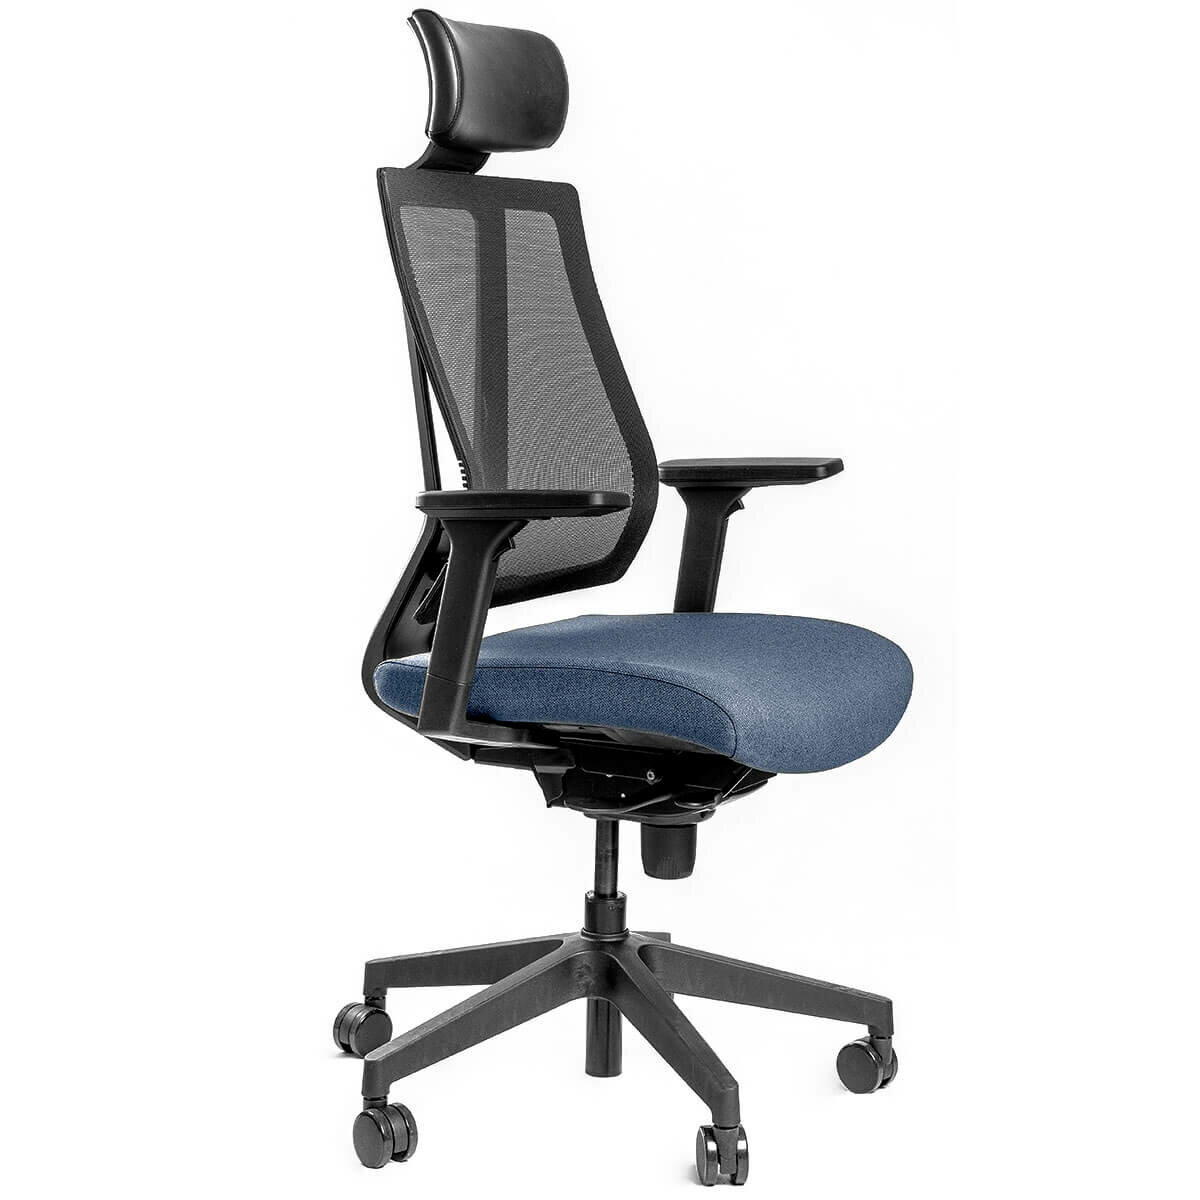 Эргономичное кресло Falto G-1 синее